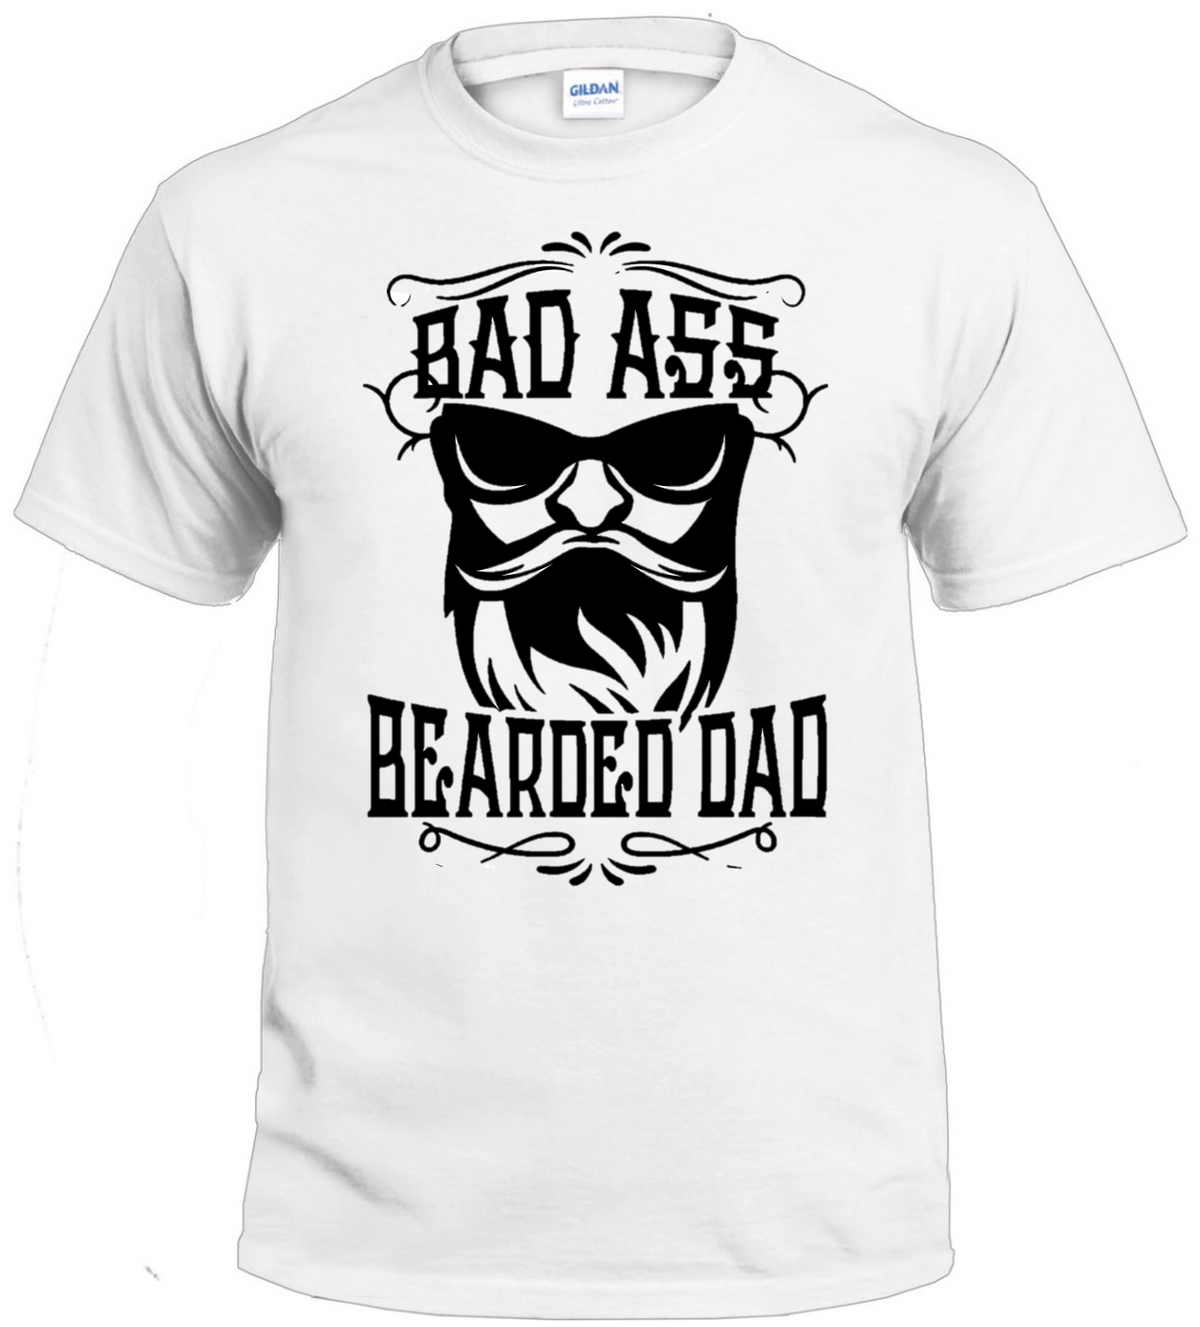 Bad Ass Bearded Dad t-shirt